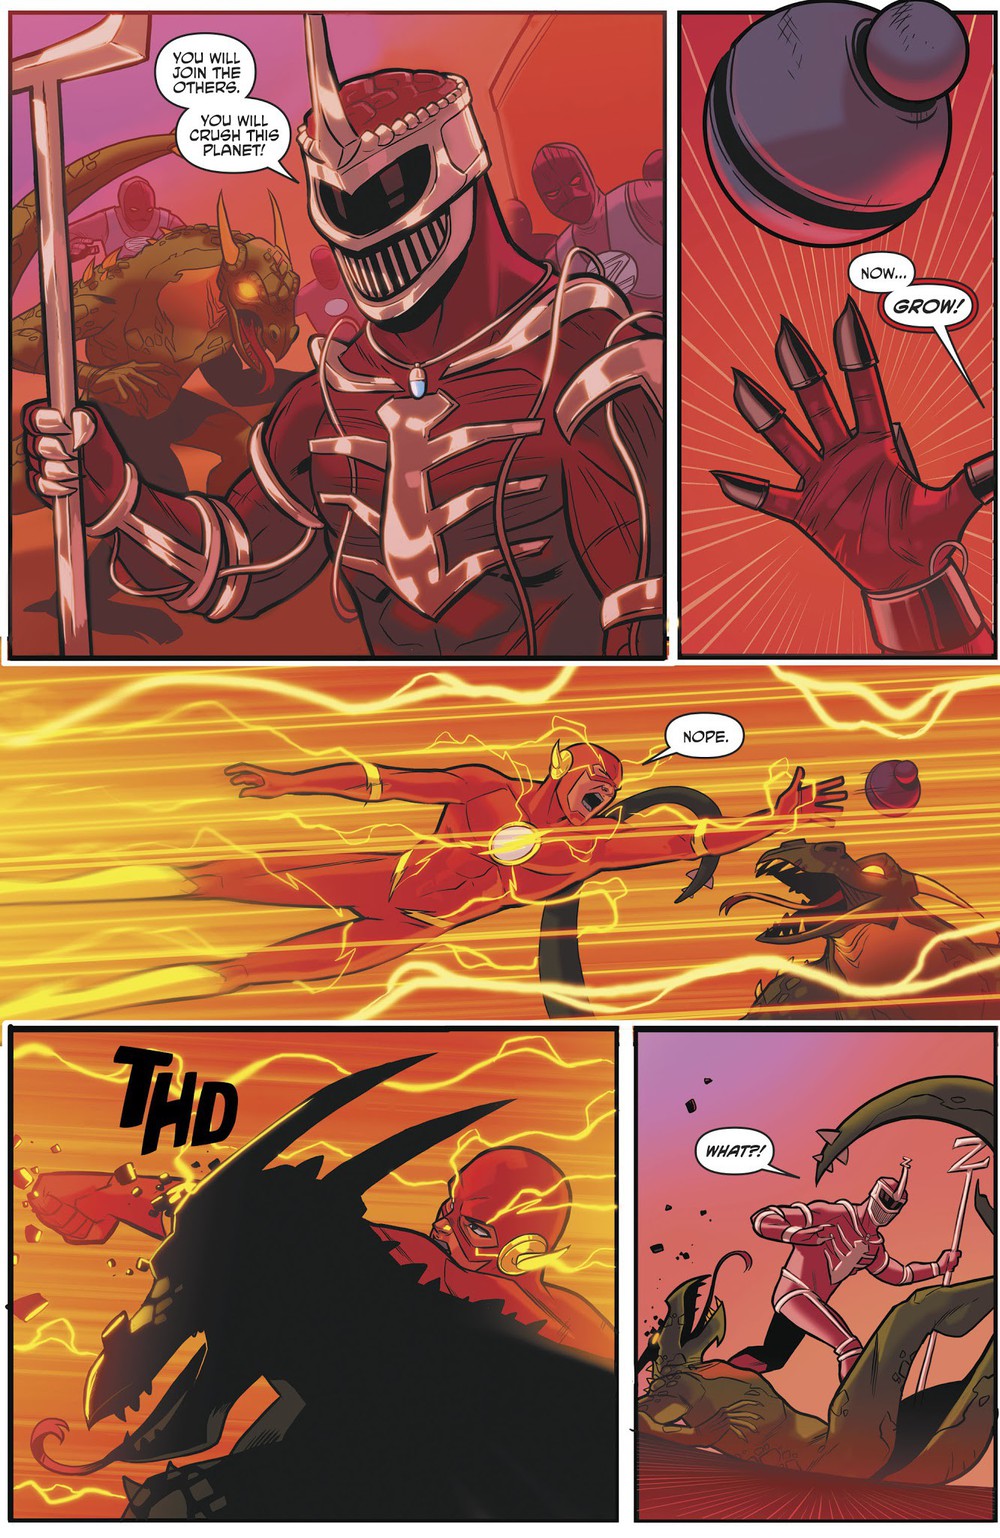 Bàn luận: Các siêu anh hùng Speedster của DC liệu có thực sự sẽ “hết xăng” khi ở vũ trụ Marvel? - Ảnh 8.